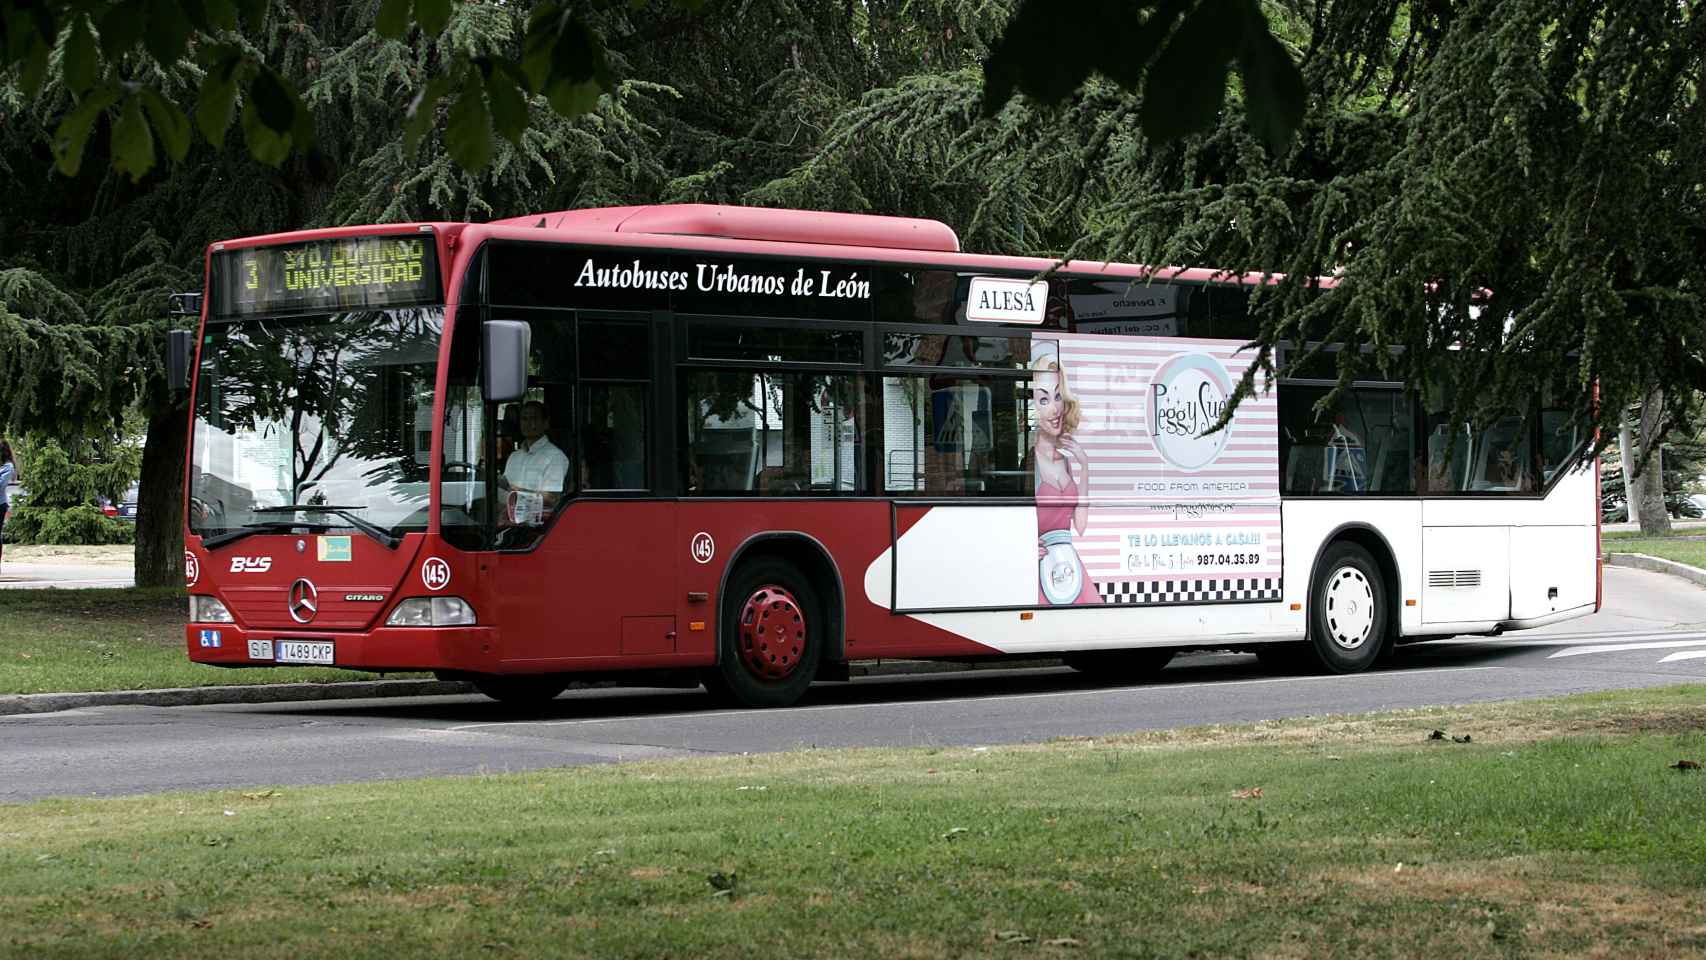 Imagen de archivo de un autobús urbano de León.